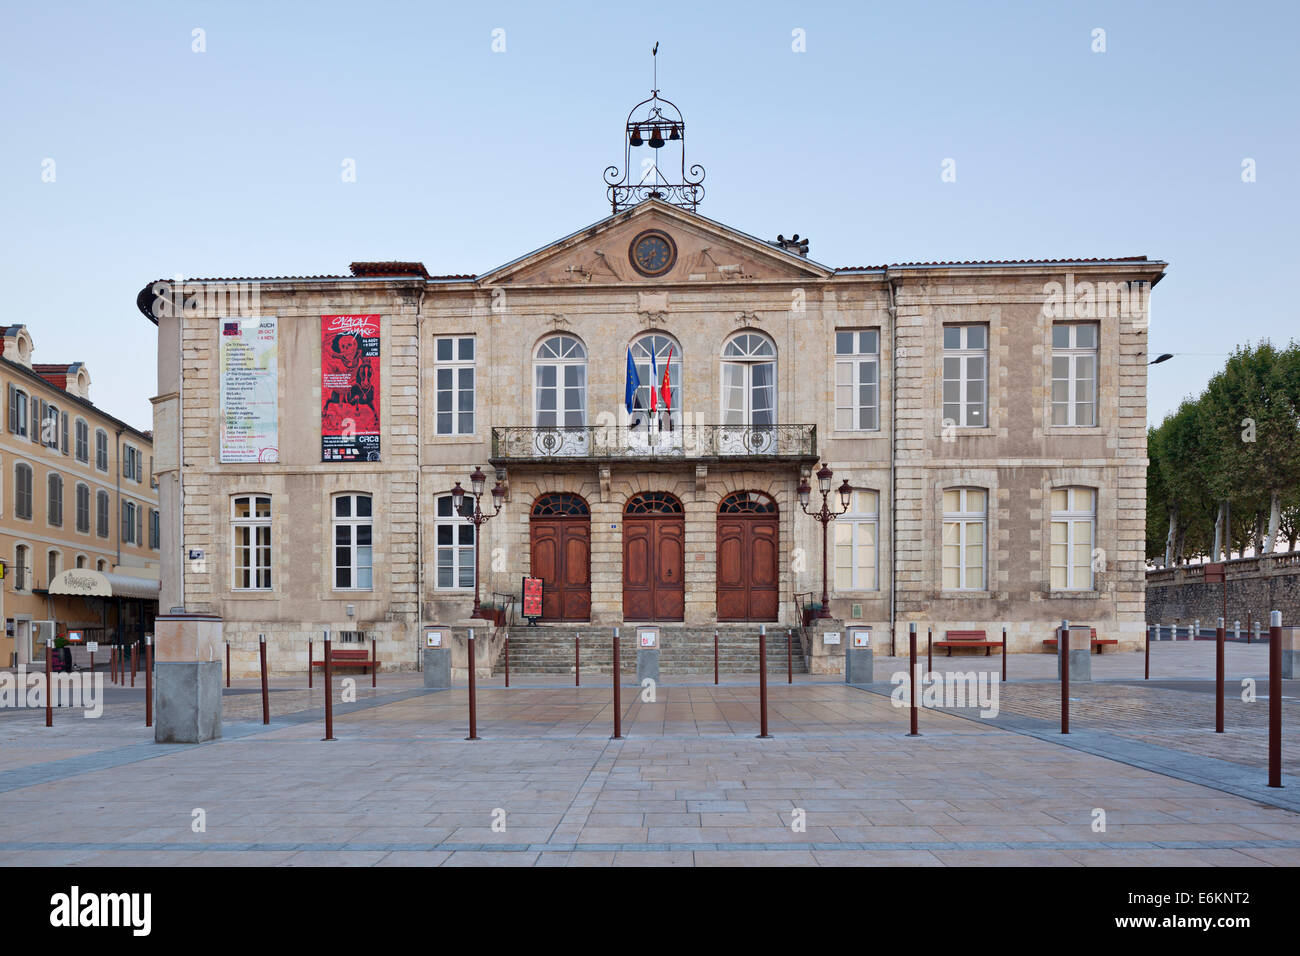 Auch l'Hôtel de Ville, construit par l'Économe d'Etigny, abrite un joli théâtre à l'Italienne Banque D'Images